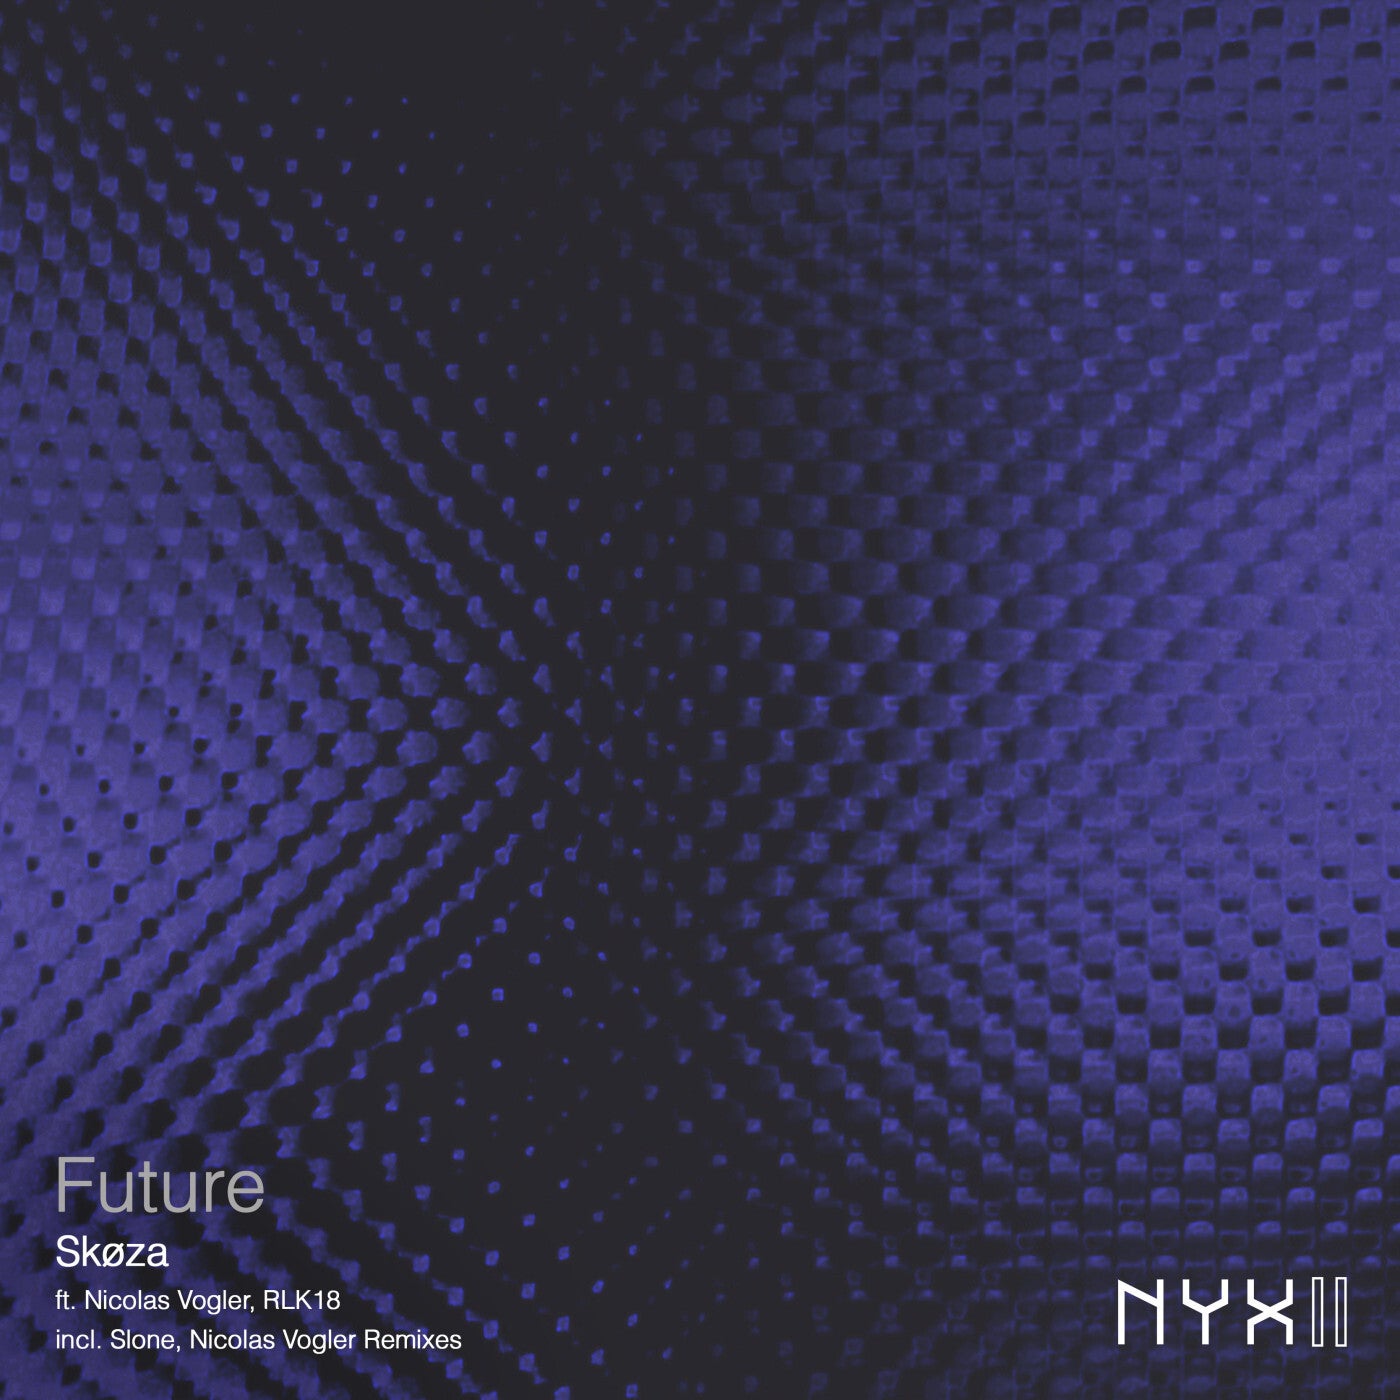 Cover - Nicolas Vogler, RLK18, Skøza - Haubitze (Slone Remix)